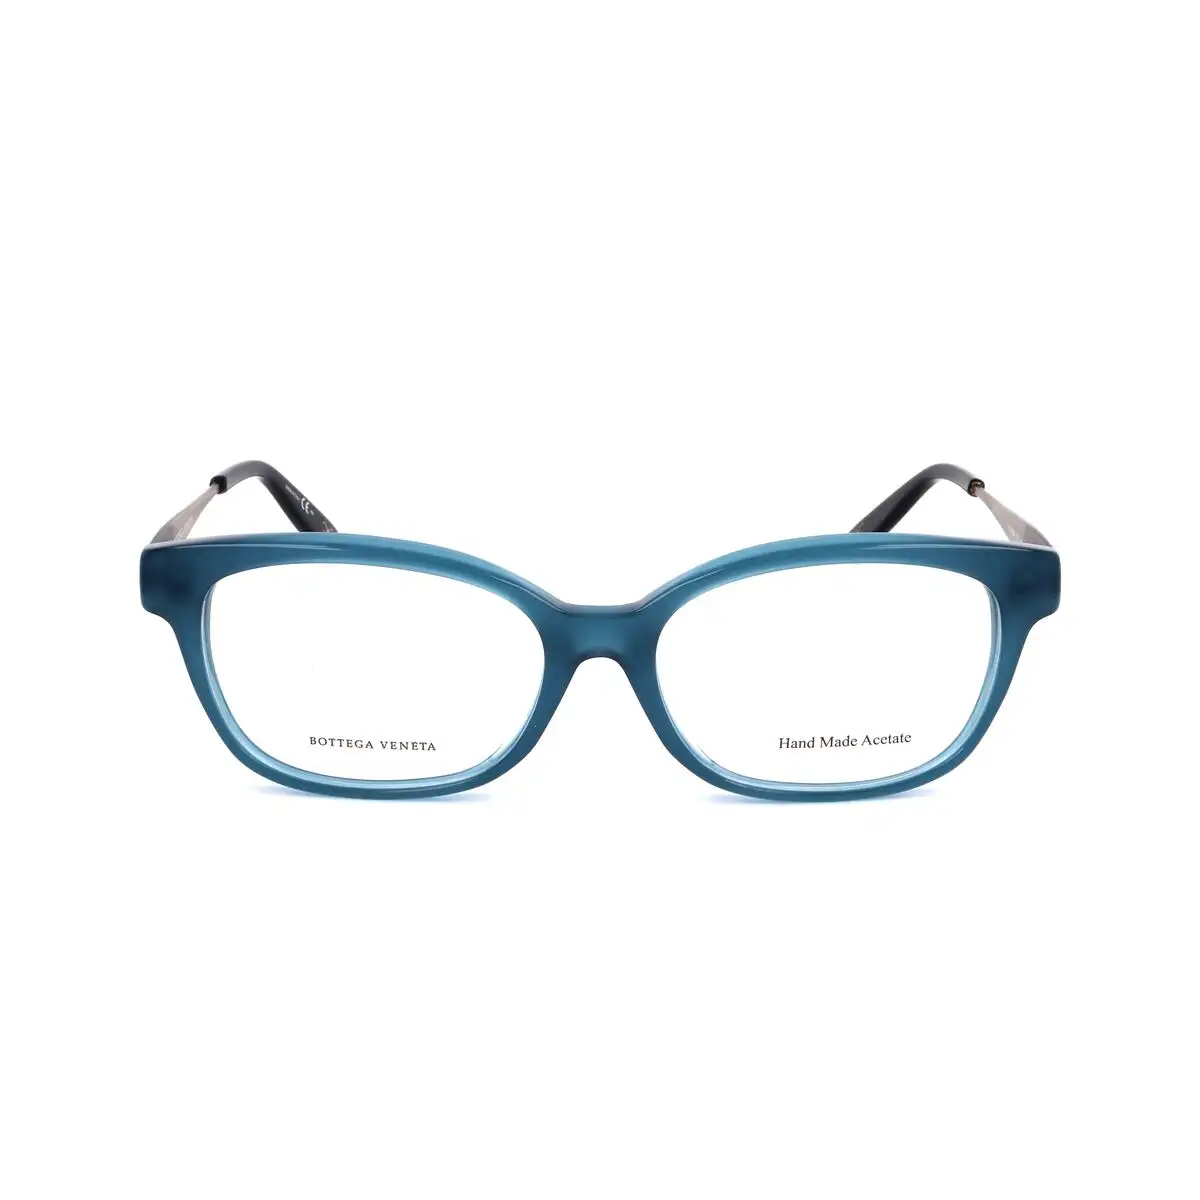 Monture de lunettes femme bottega veneta bv 602 j f2g argente bleu_6346. DIAYTAR SENEGAL - Où Choisir est un Plaisir. Explorez notre boutique en ligne et choisissez parmi des produits de qualité qui satisferont vos besoins et vos goûts.